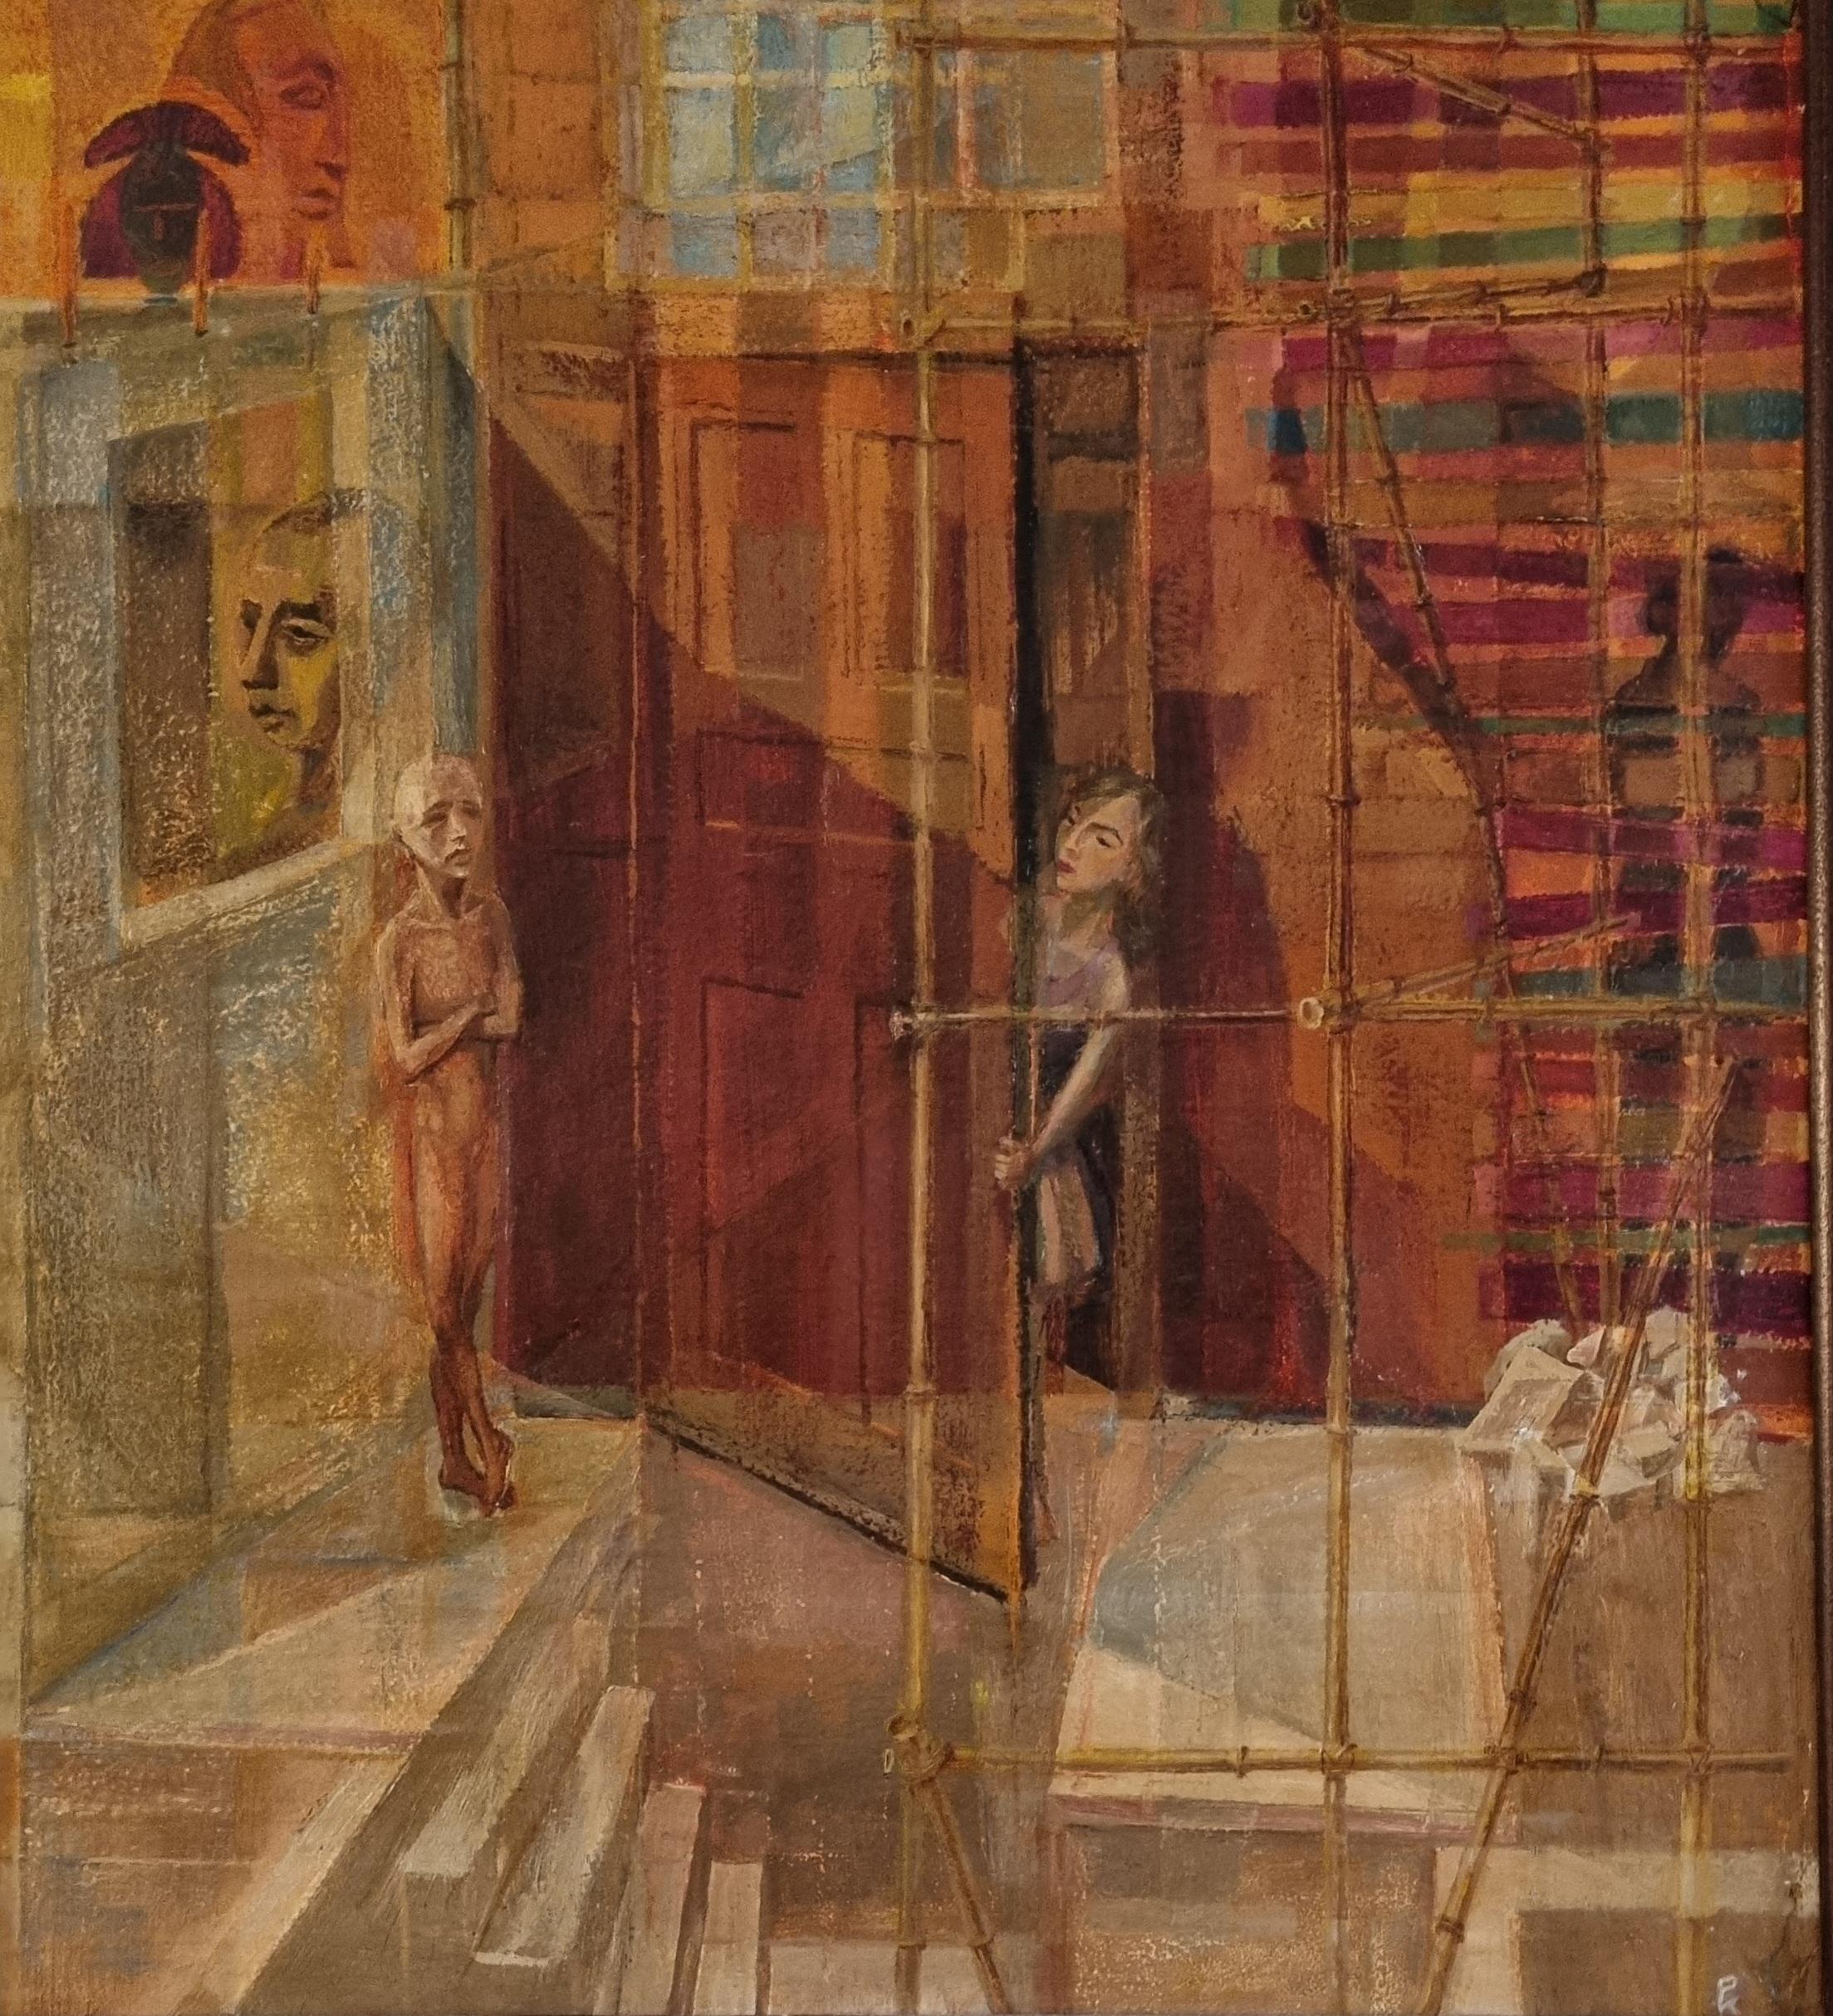 Surrealistisches Gemälde des 20. Jahrhunderts von Philip Krevoruck, Wpa-Ära (Surrealismus), Painting, von PHILIP KREVORUCK